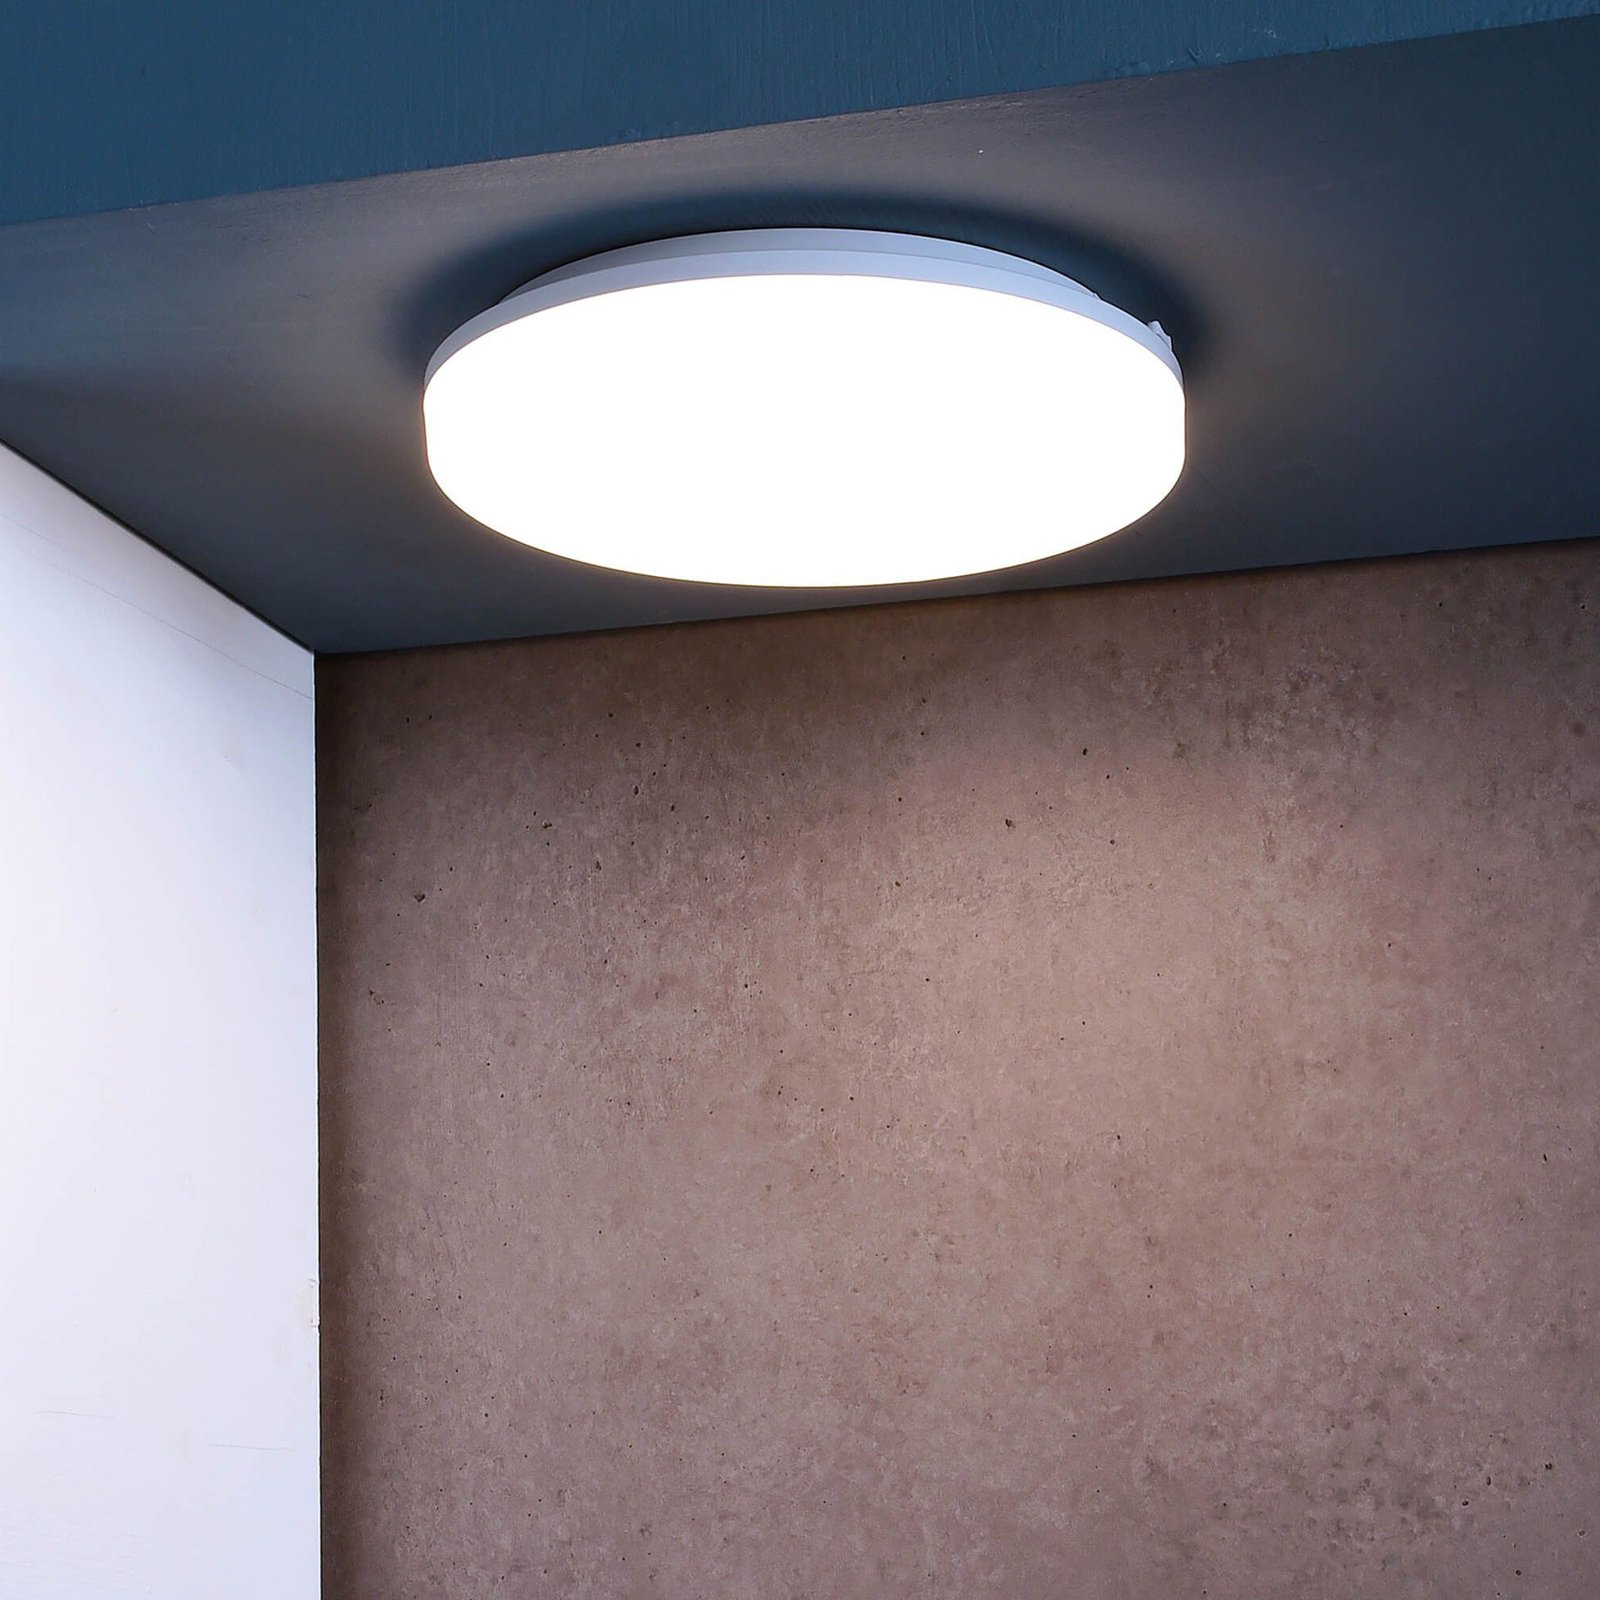 Altais LED ceiling light IP54 Ø 22 cm